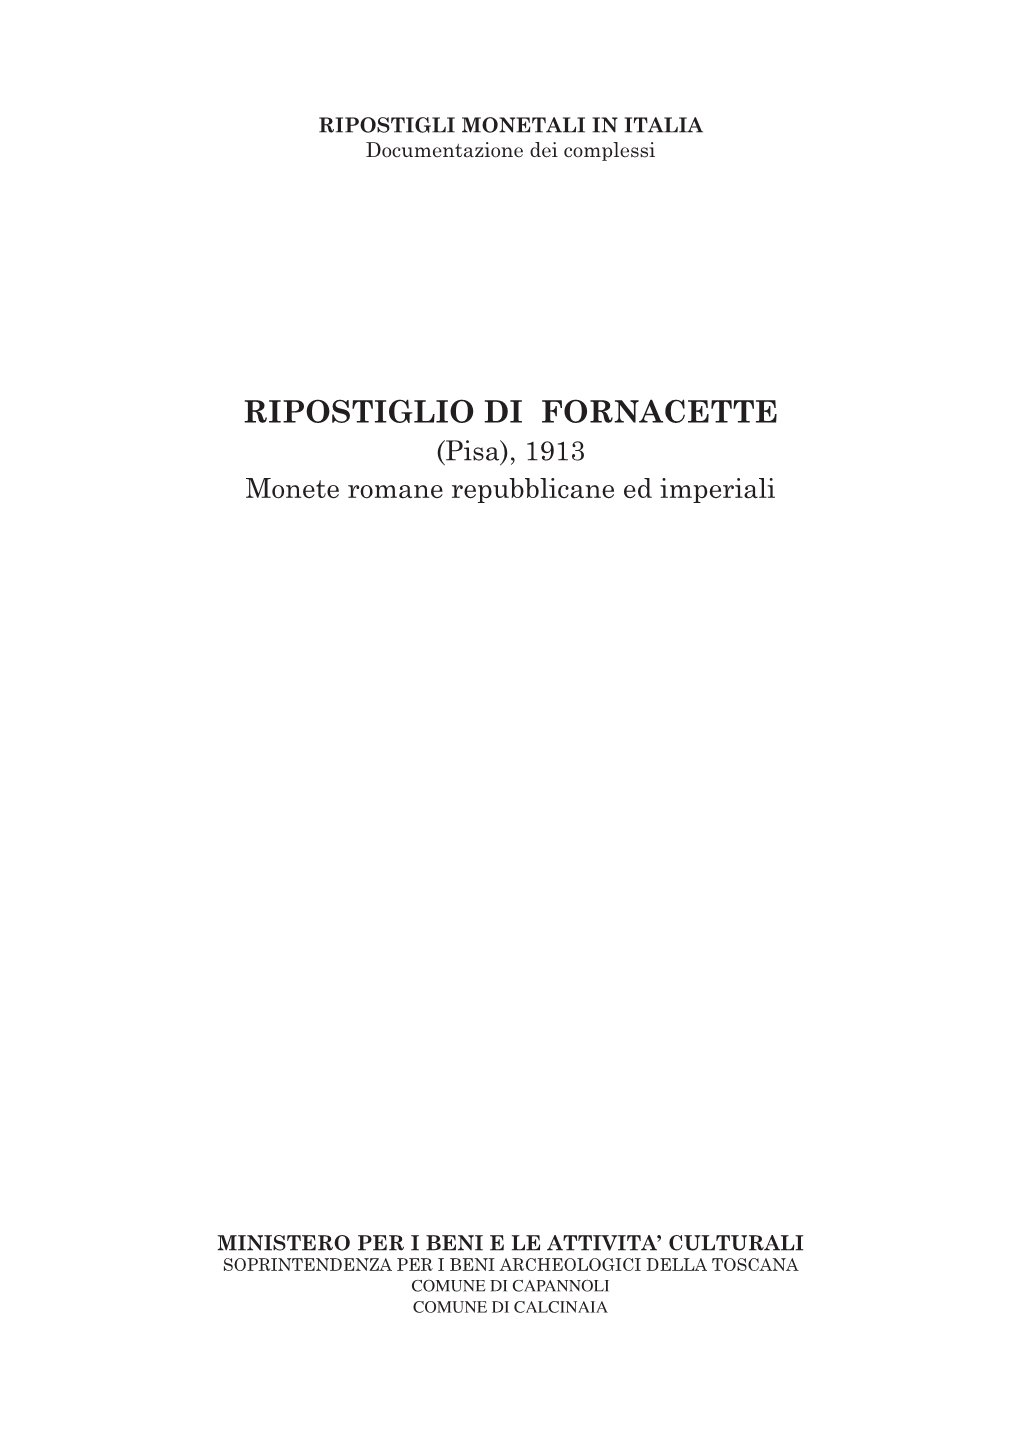 RIPOSTIGLIO DI FORNACETTE (Pisa), 1913 Monete Romane Repubblicane Ed Imperiali